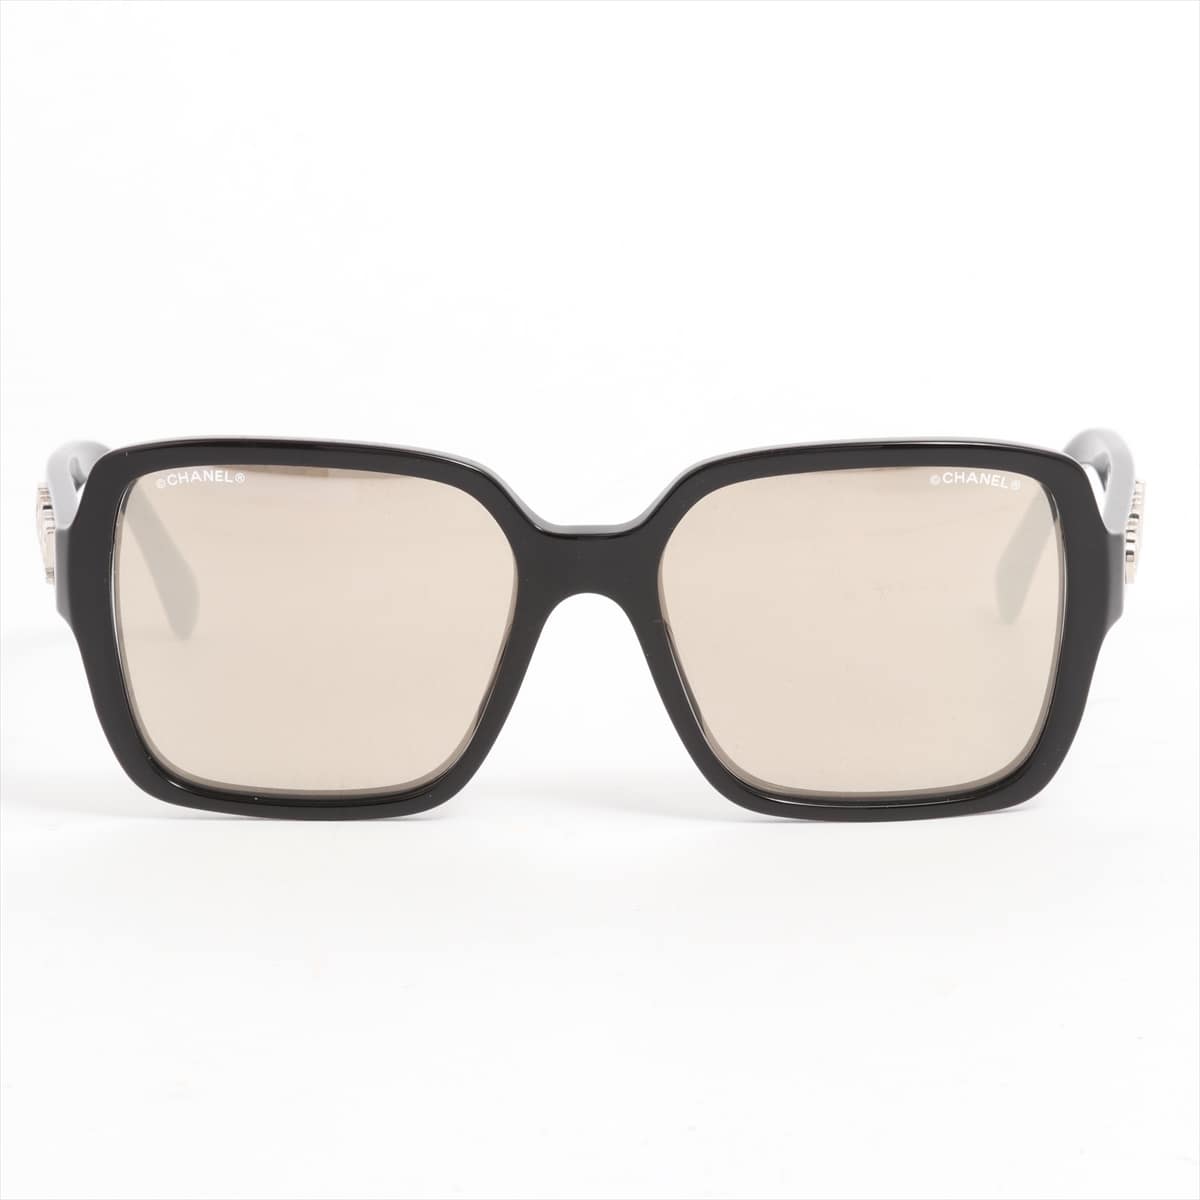 Chanel 5408-A Sunglasses Plastic Black